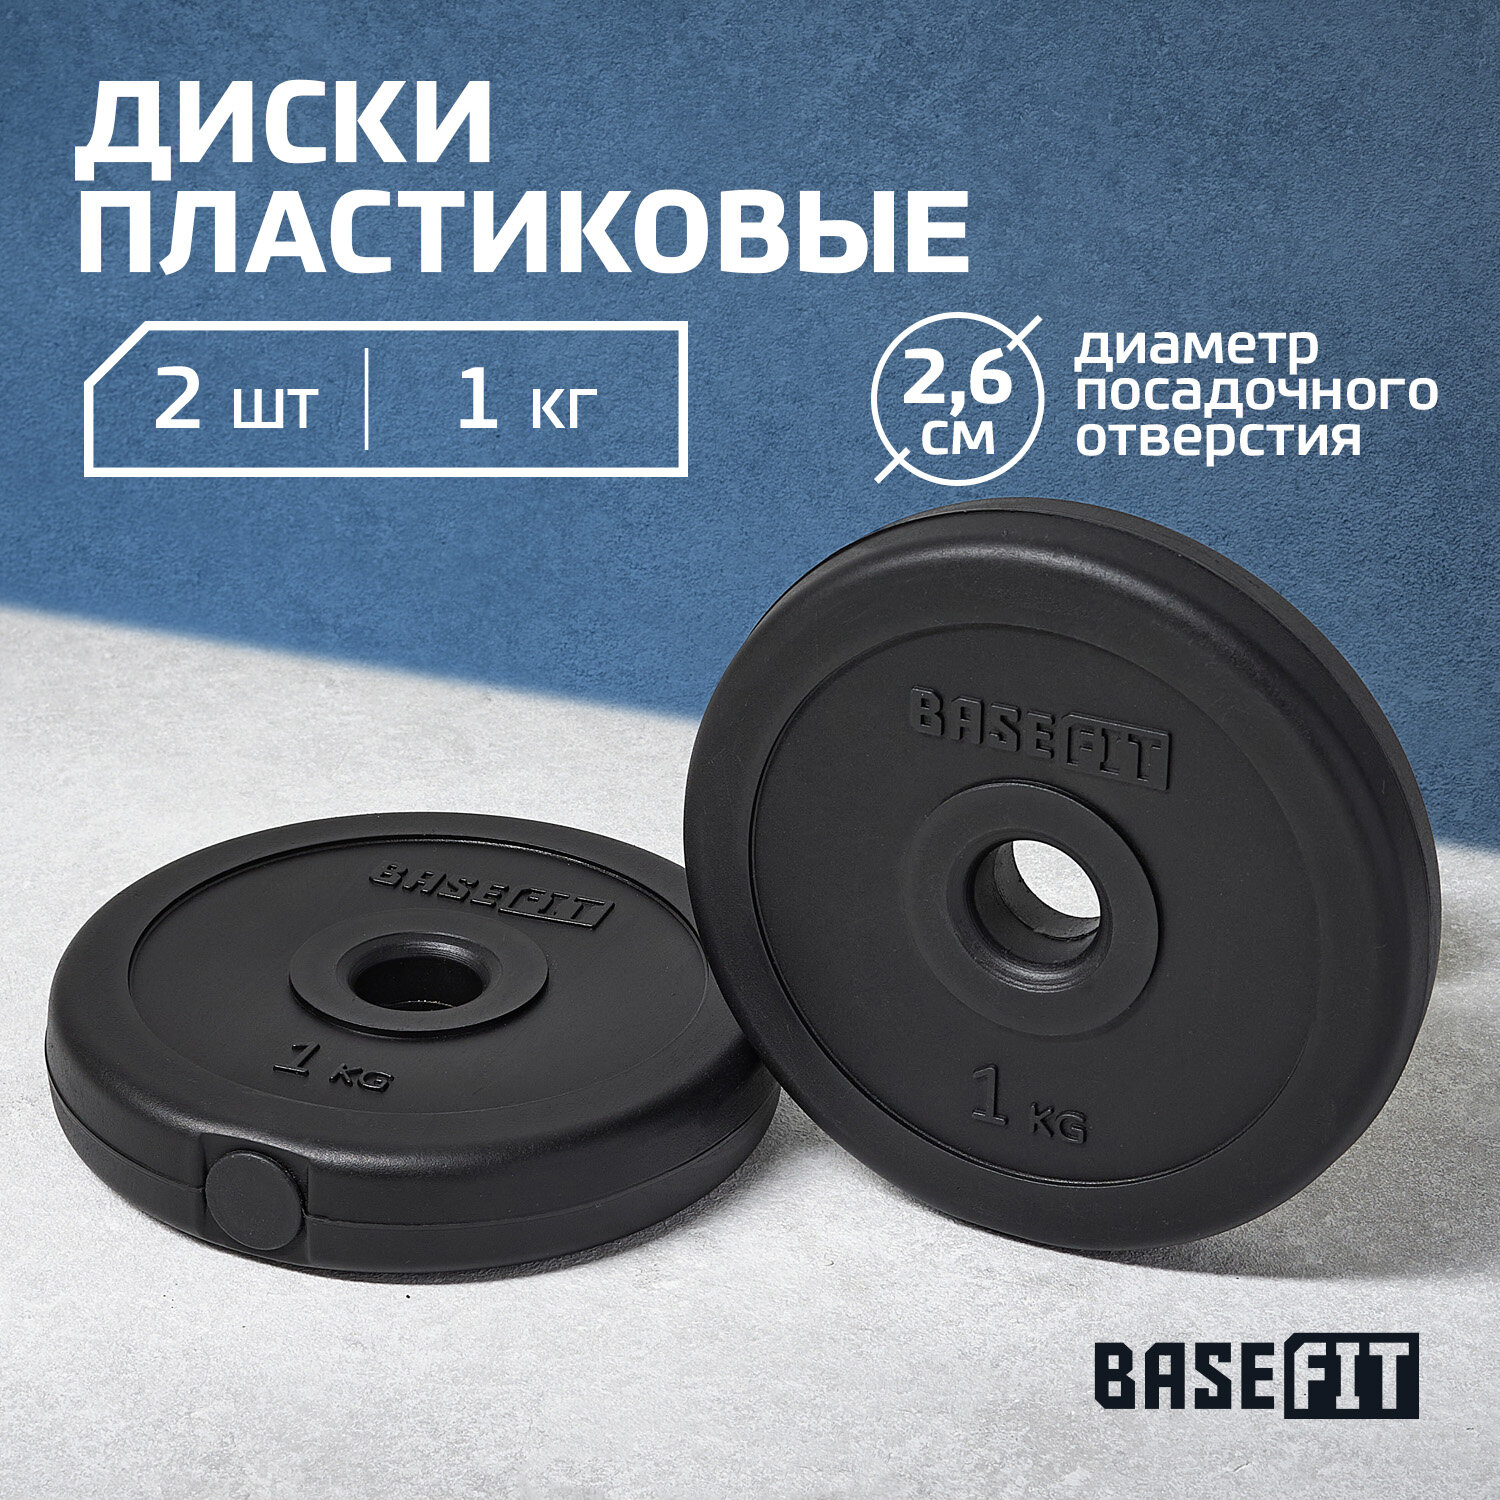 Диск пластиковый BASEFIT BB-203 1 кг, d=26 мм, черный, 2 шт